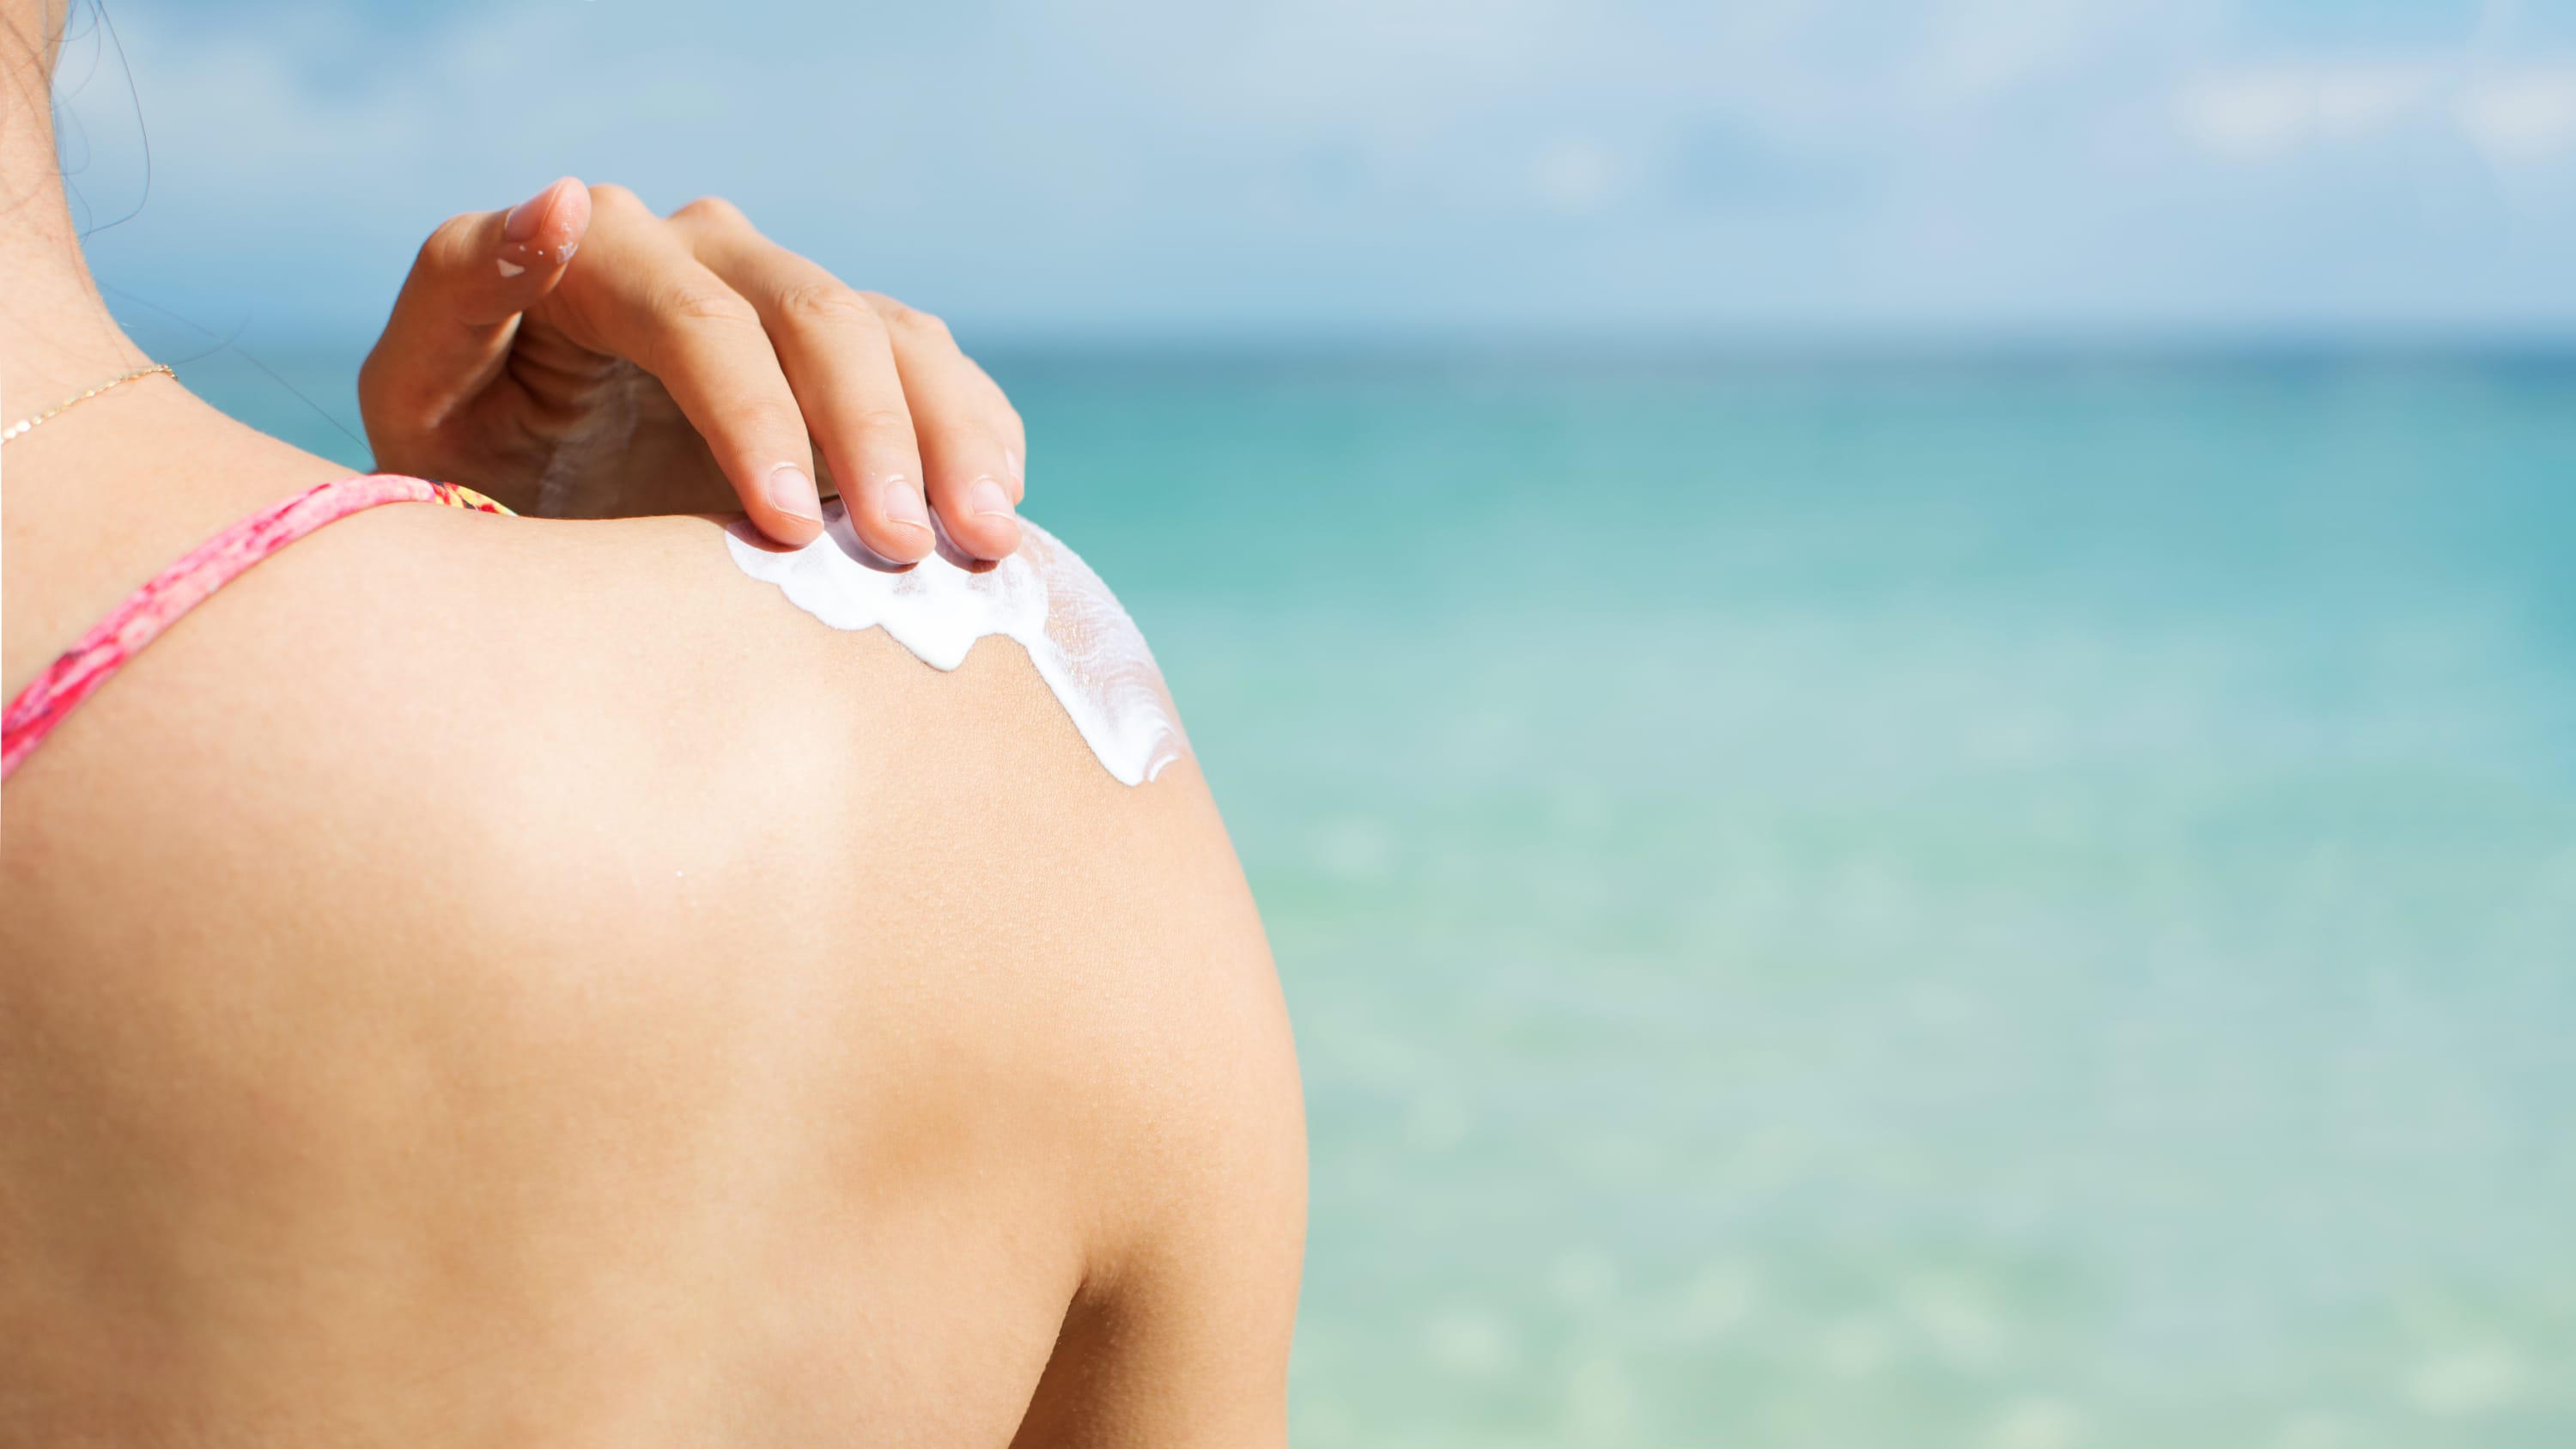 Girl applying sun lotion on the beach